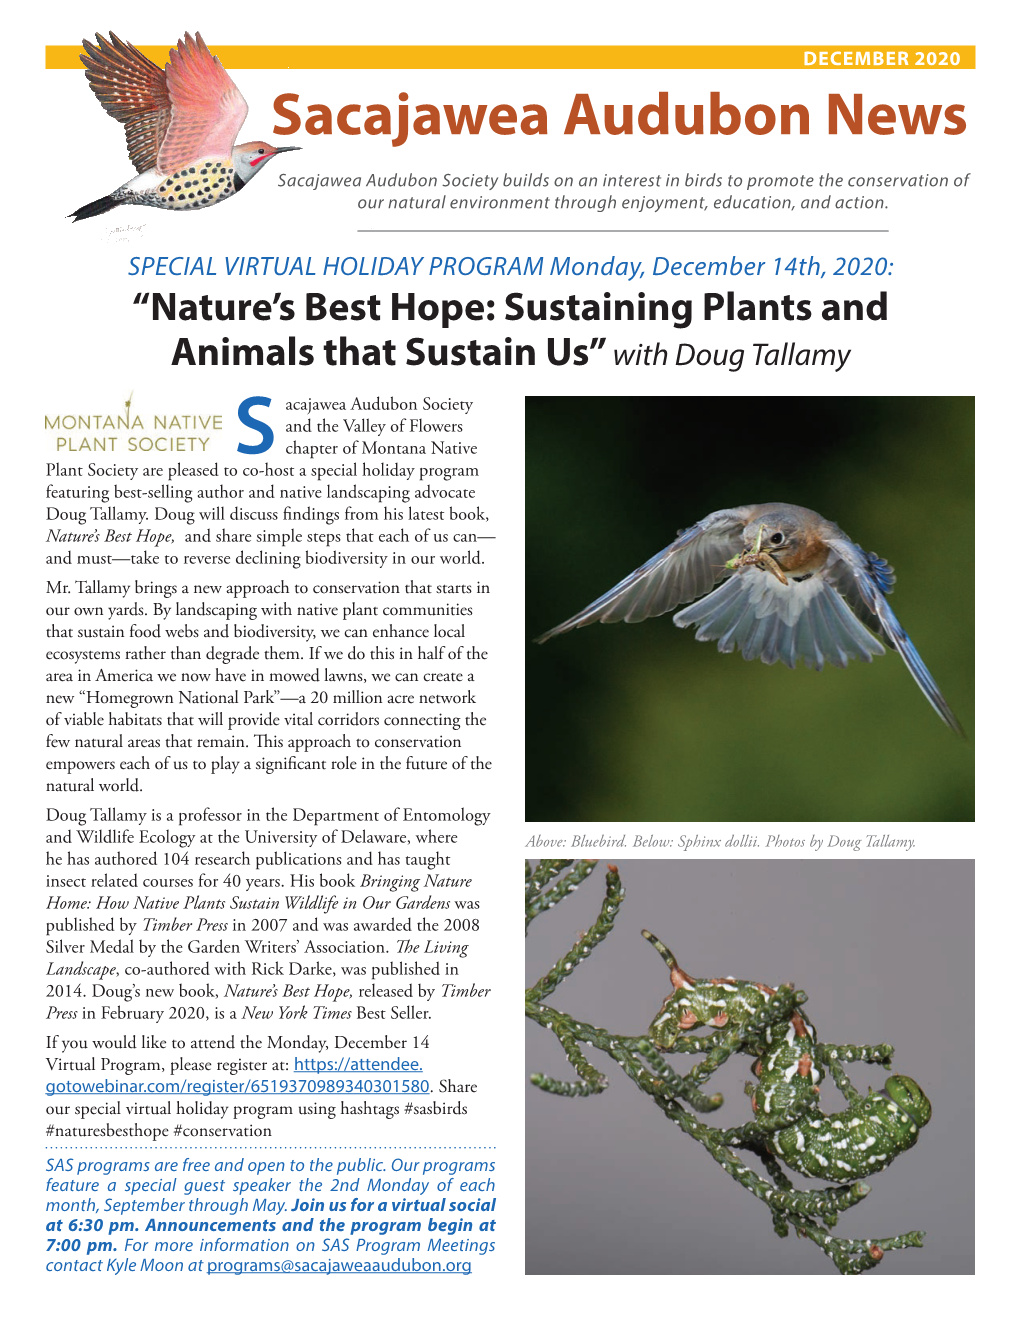 December 2020 Sacajawea Audubon News